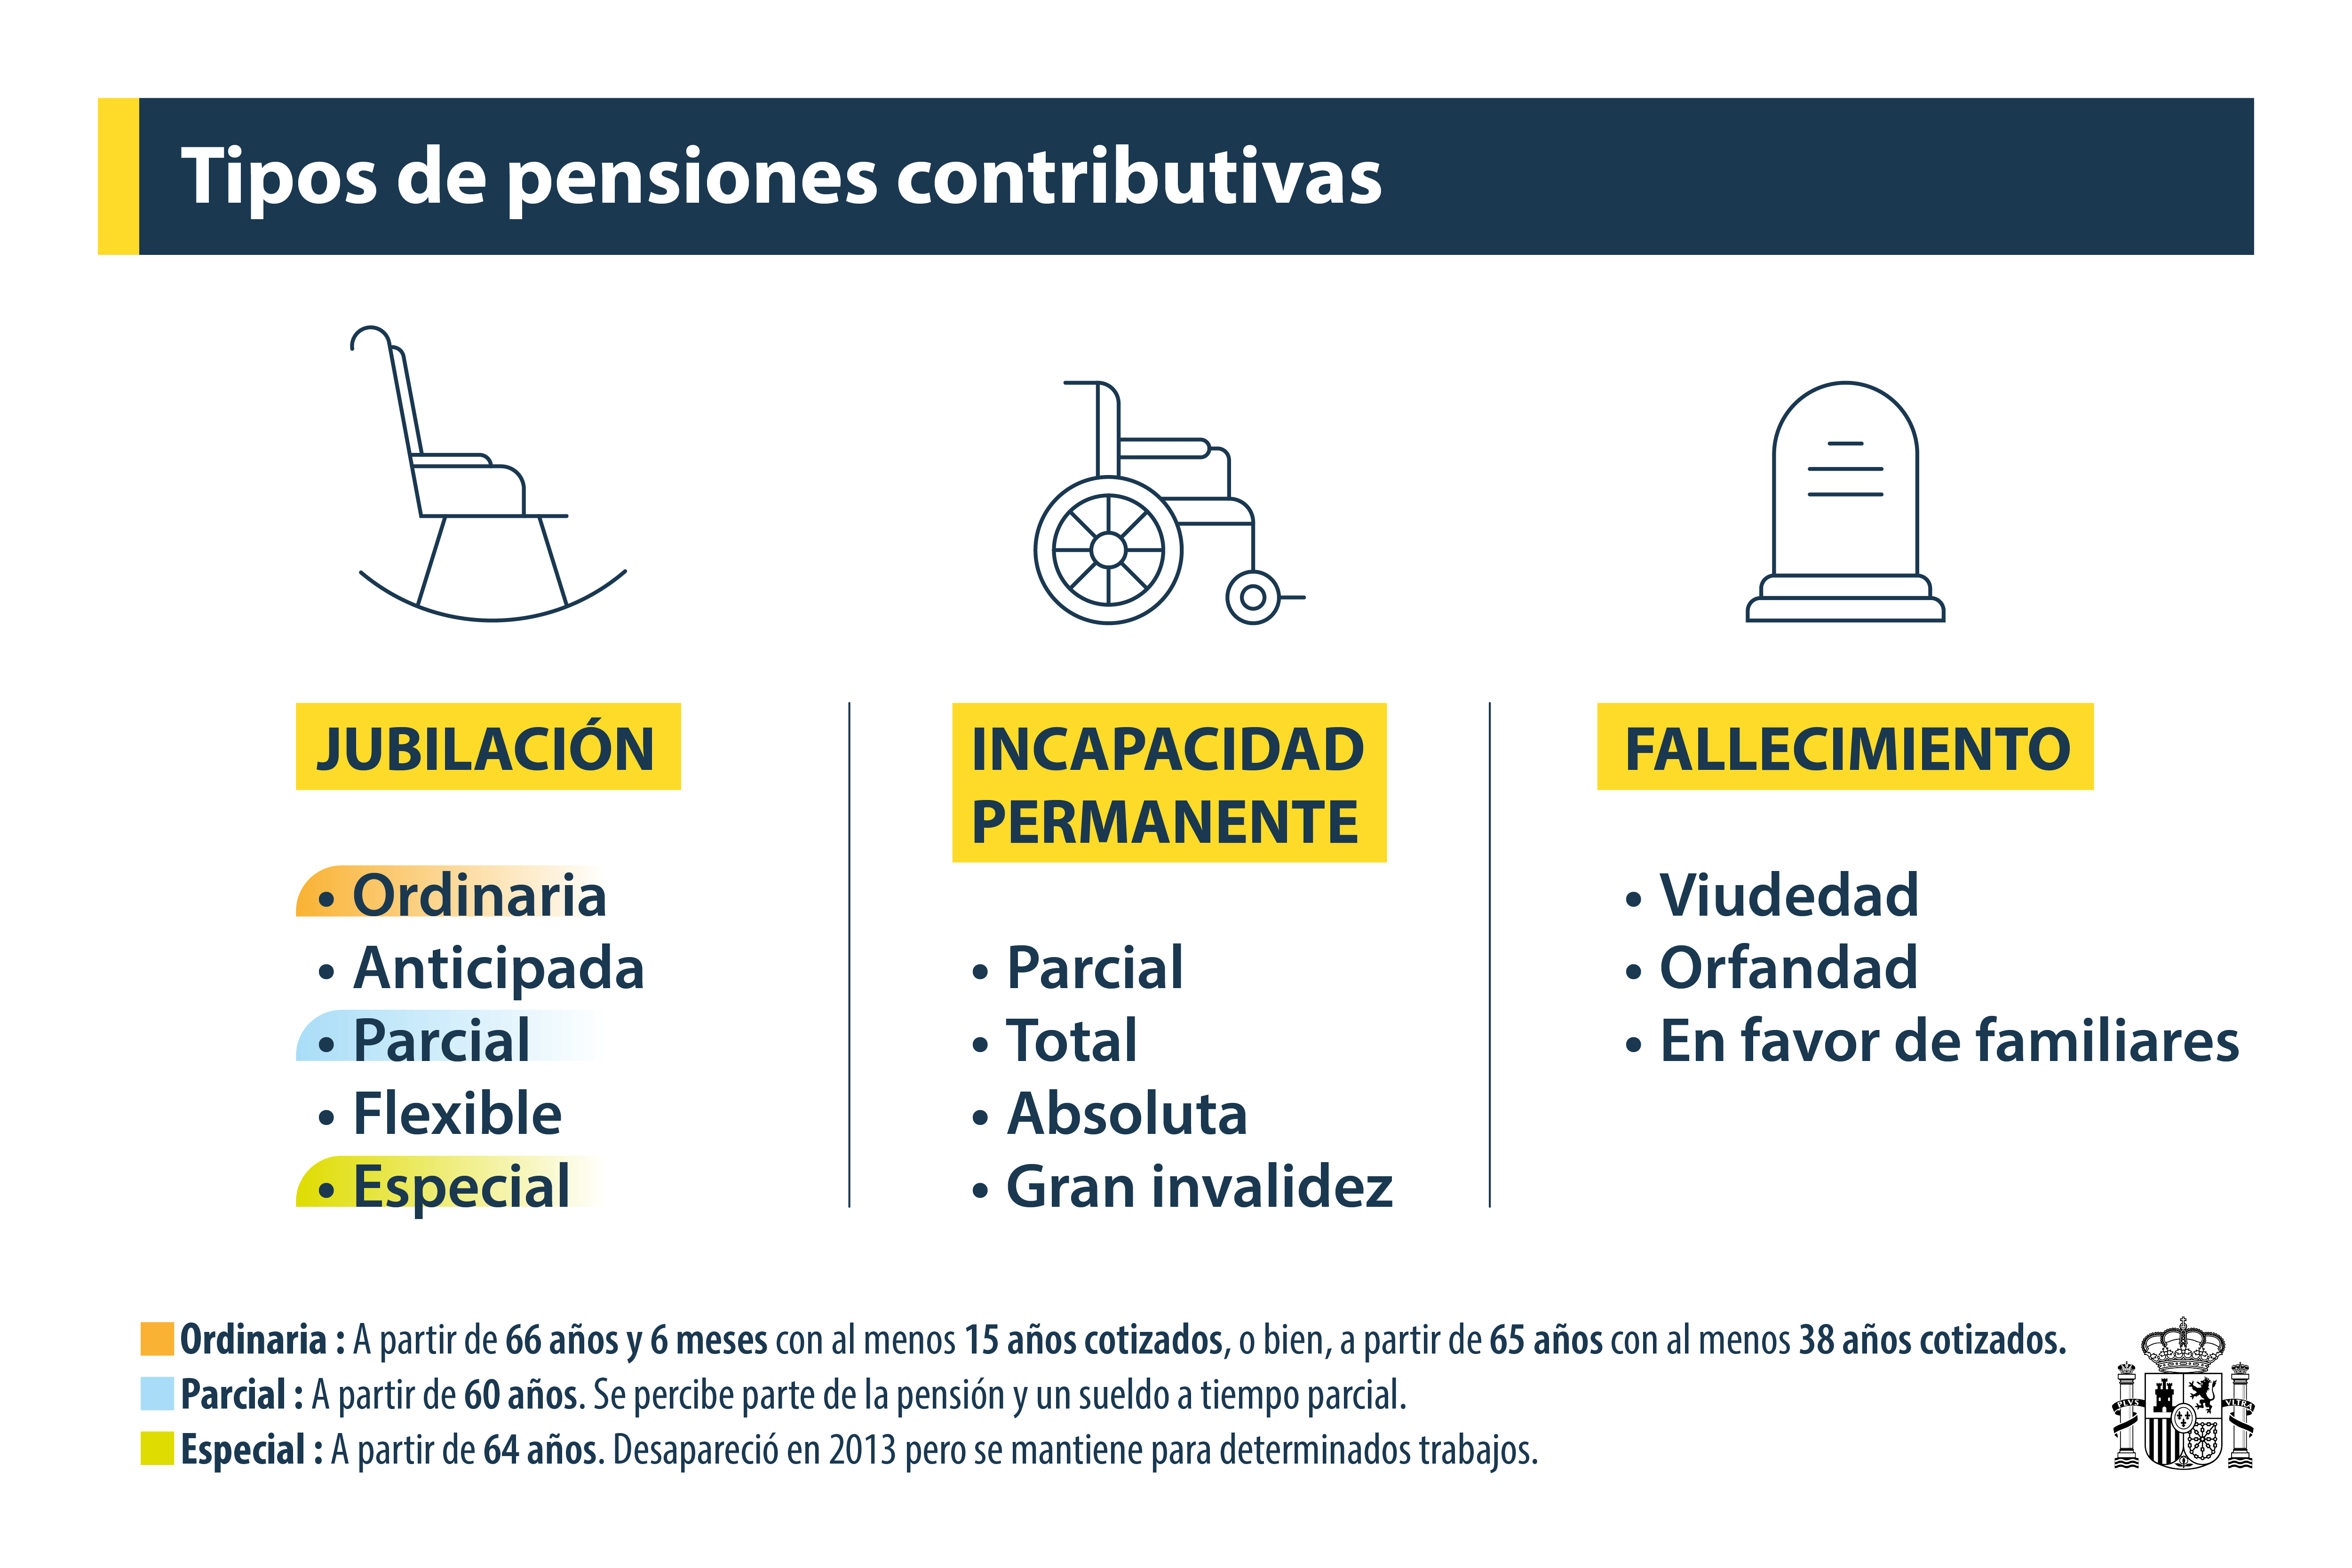 Tipo de pensiones contributivas en España